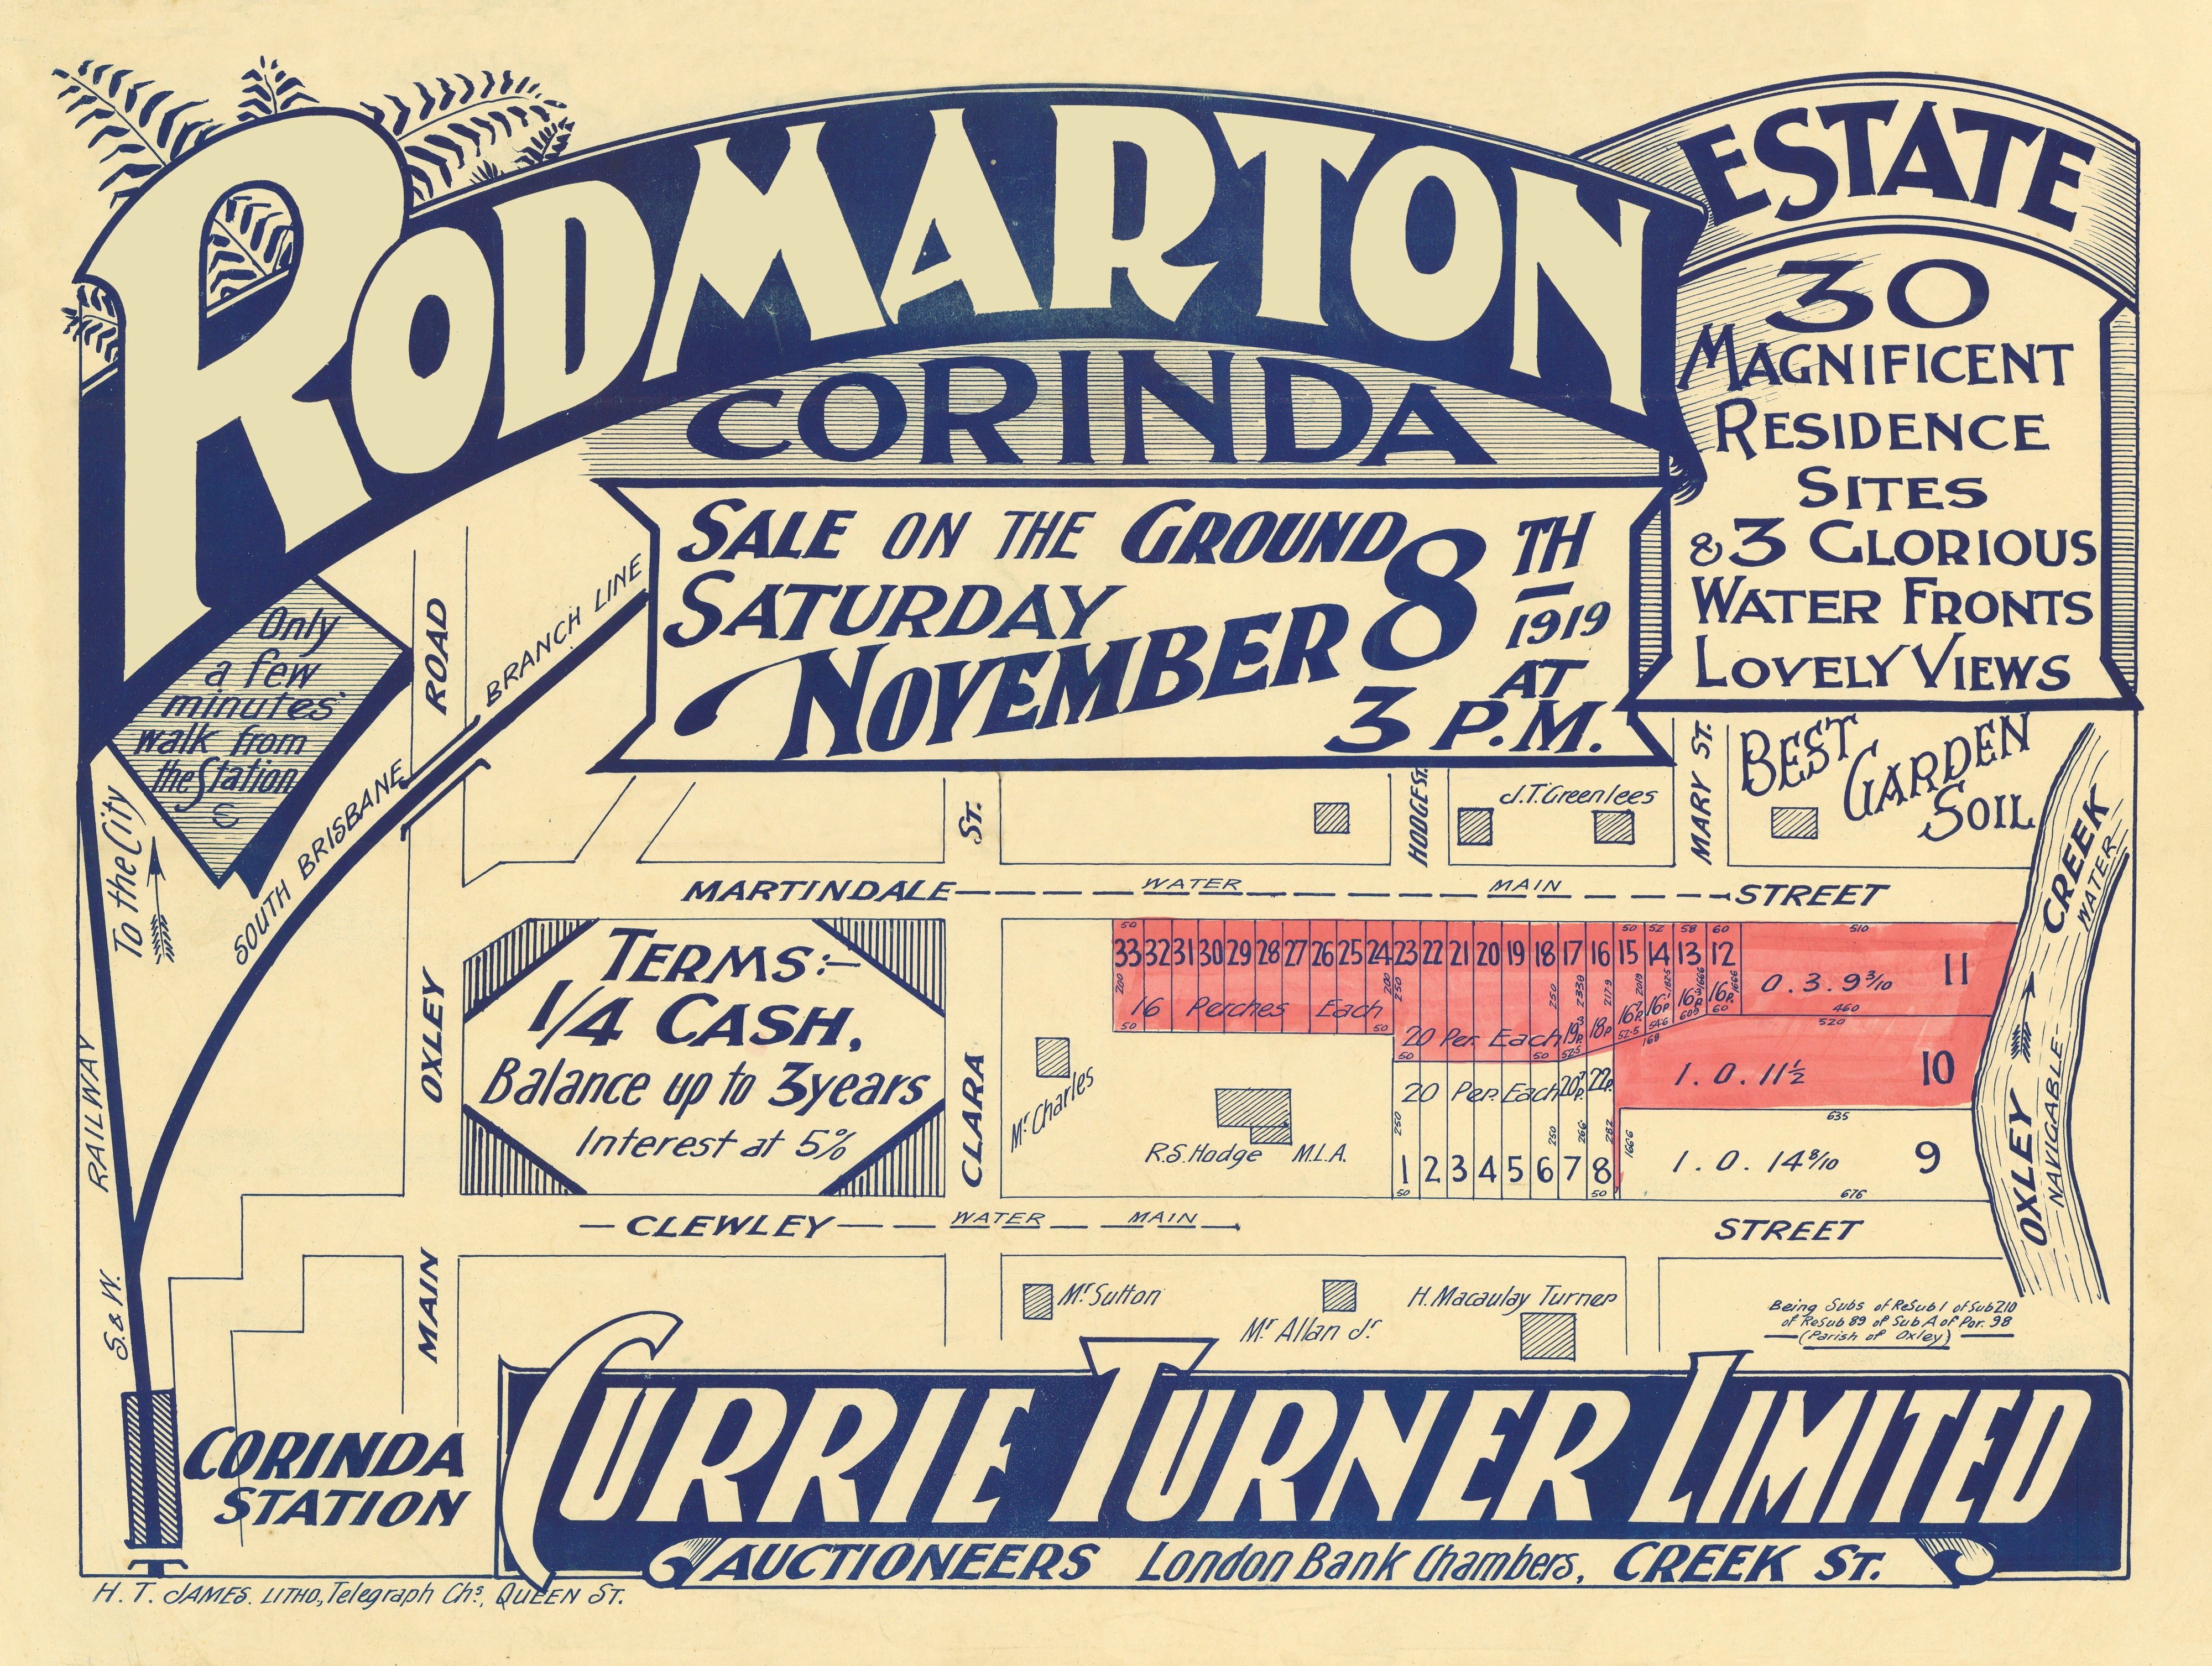 1919 Corinda - Rodmarton Estate